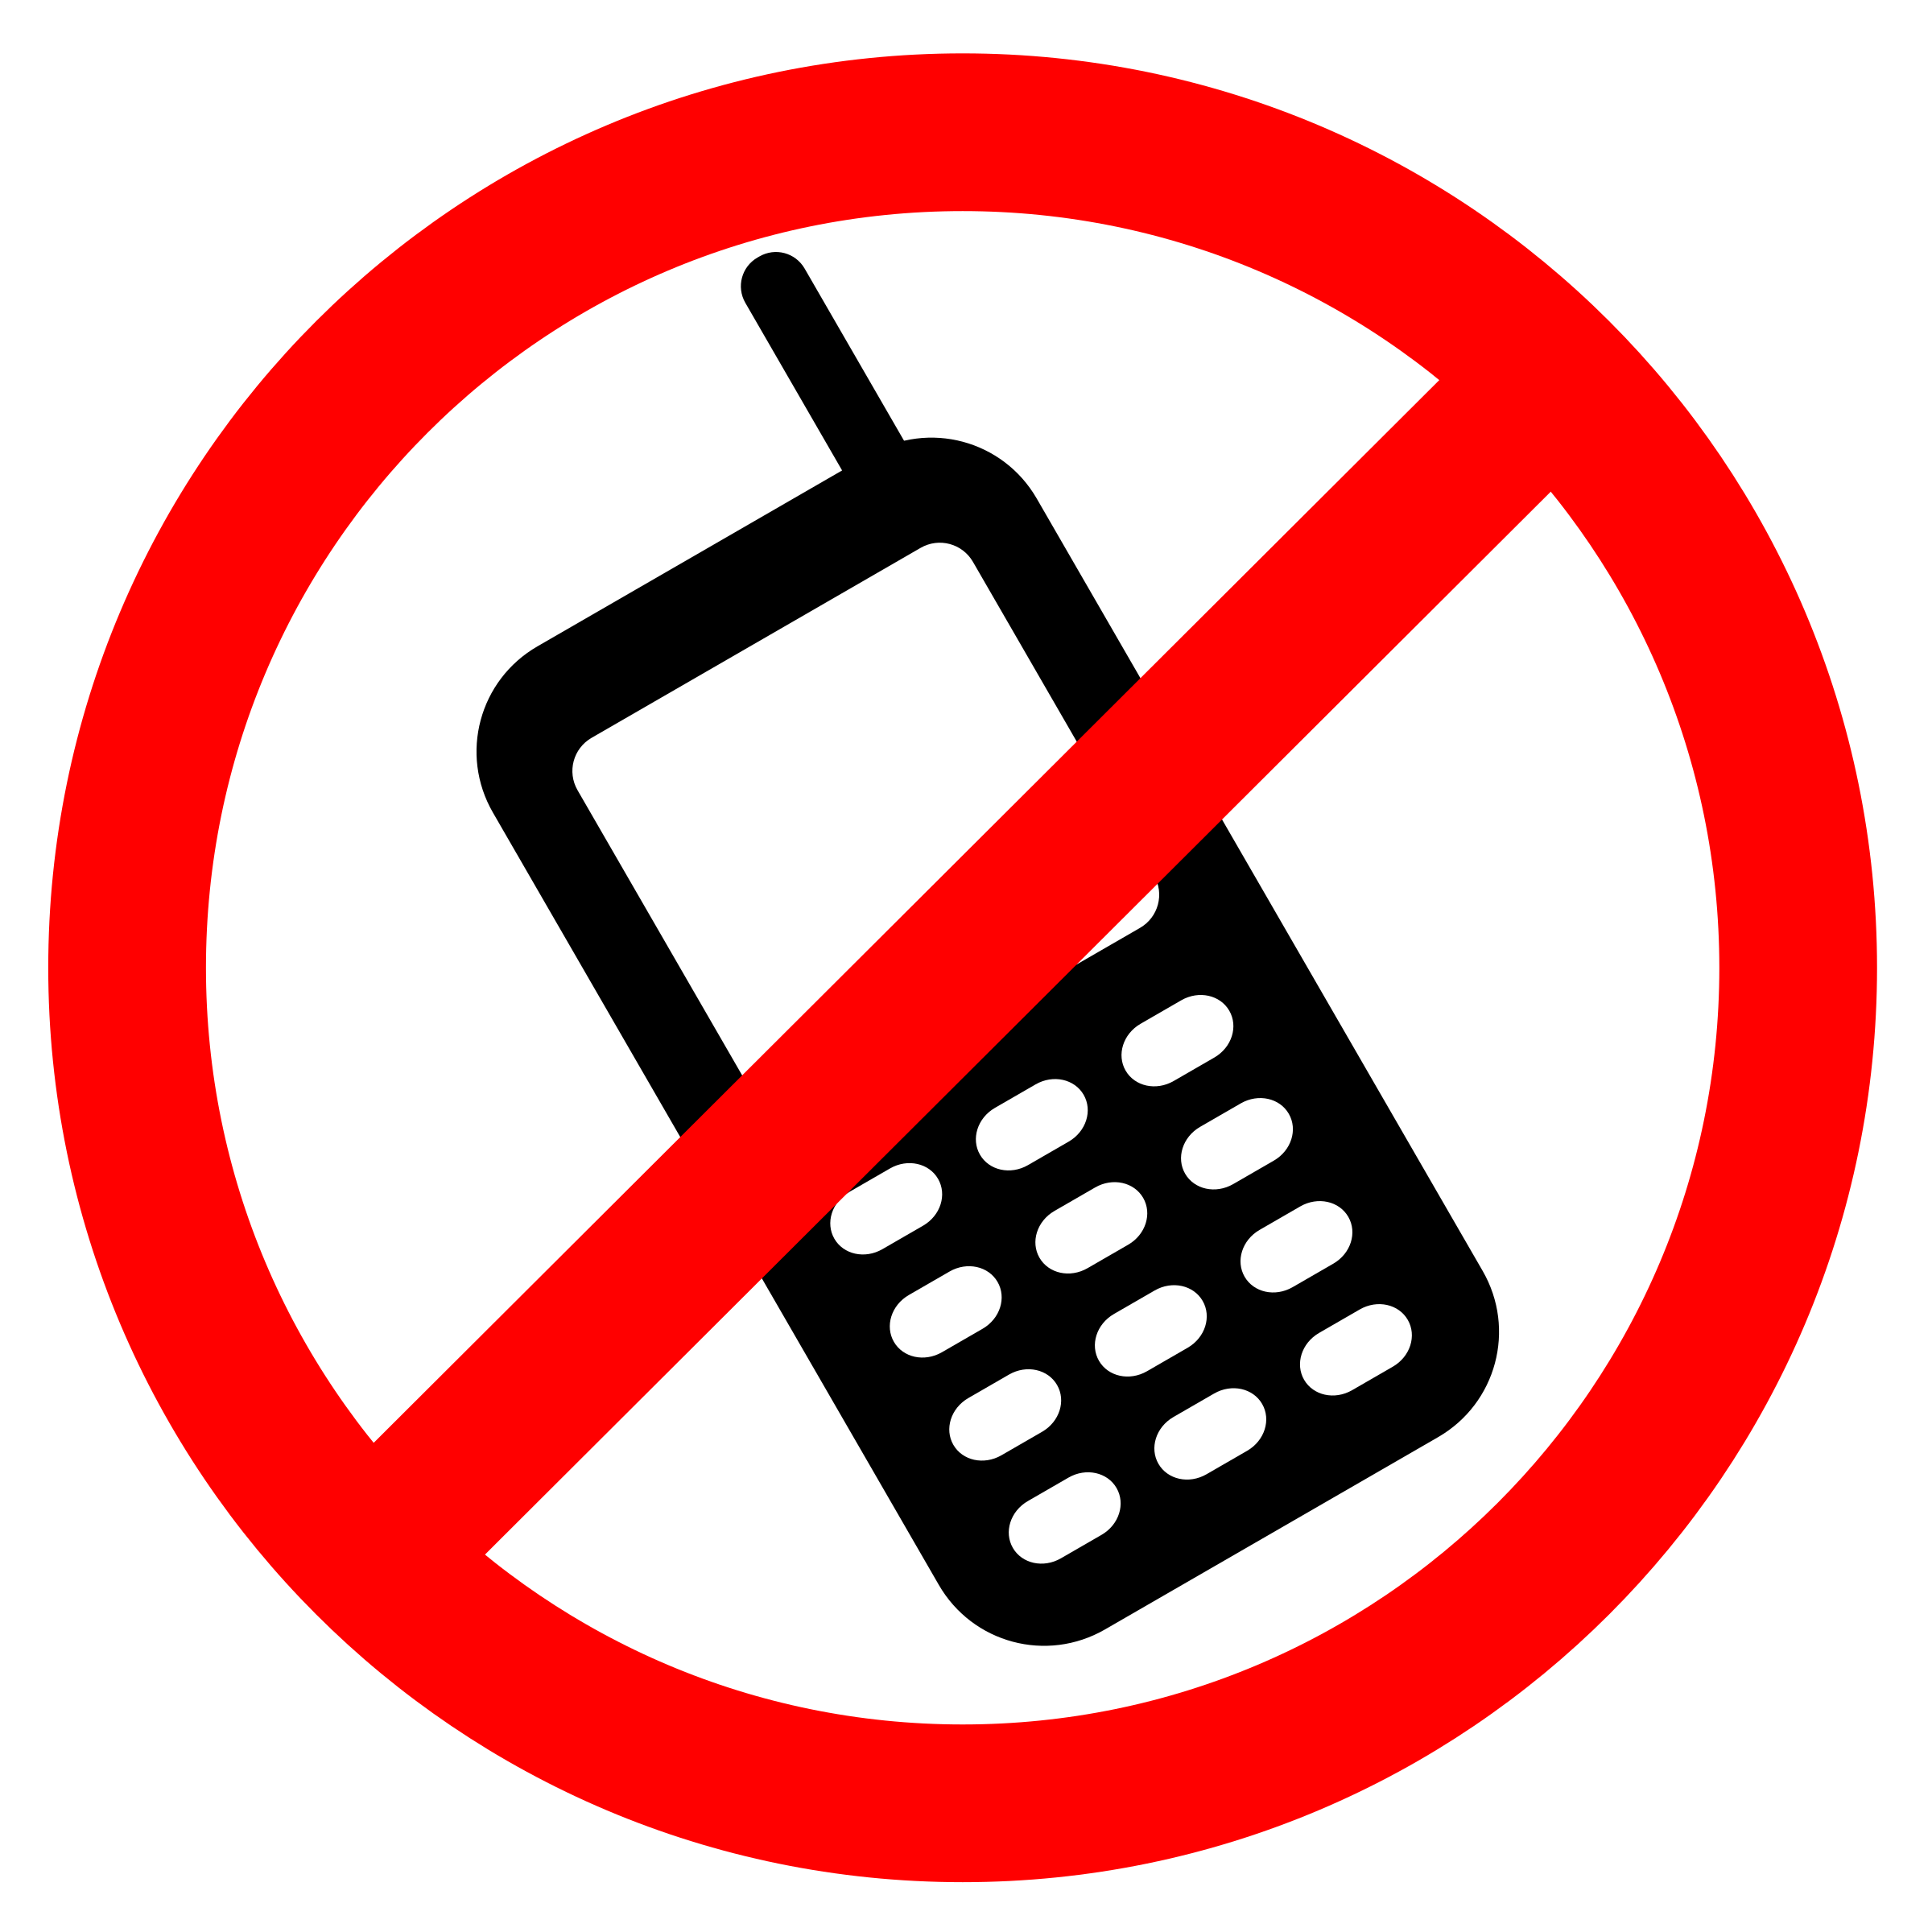 Зона без мобильного. Запрет телефона. Знак сотового телефона перечеркнут. Значок запрет телефона. Пользоваться телефоном запрещено на прозрачном фоне.